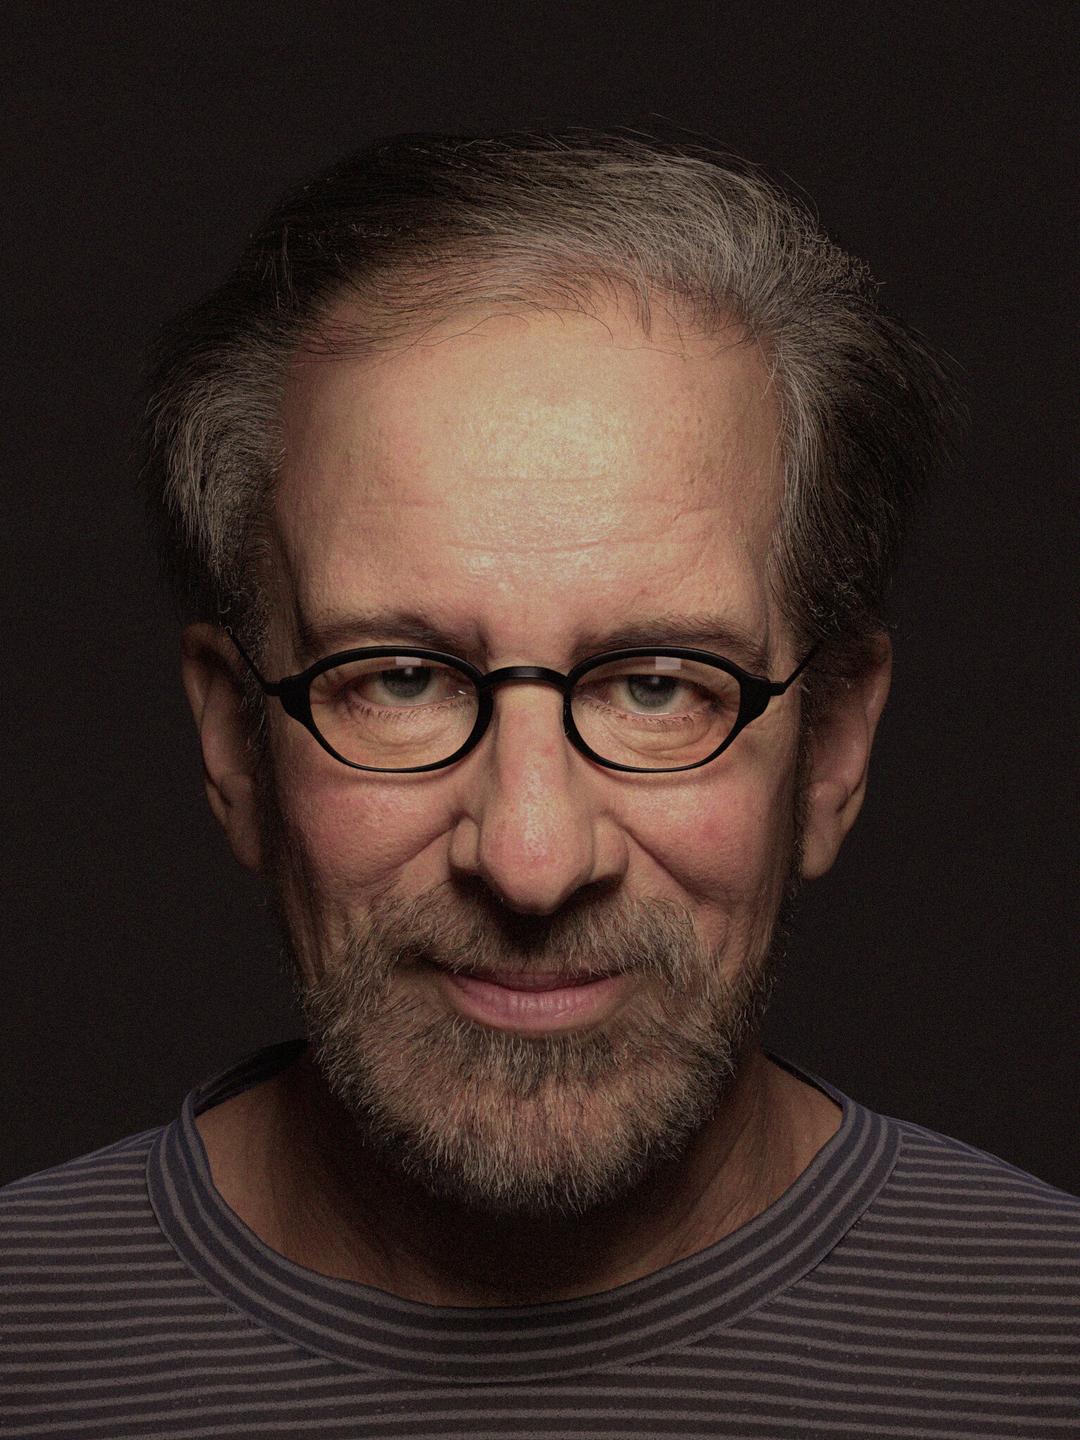 Steven Spielberg early life